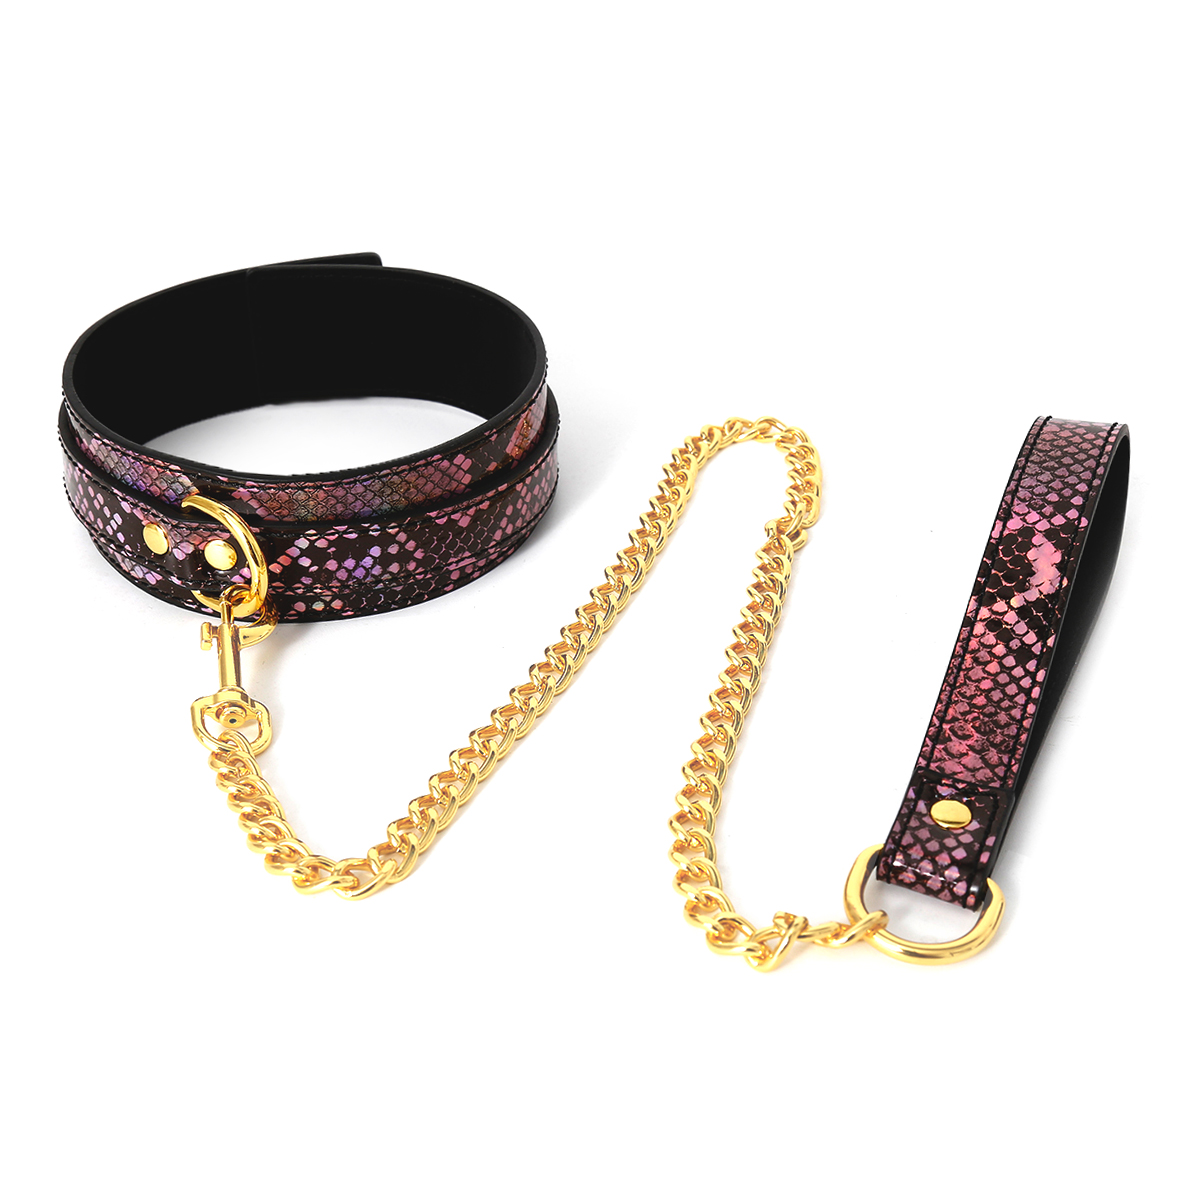 Collar Gold/Pink Reptile with Leash koop je bij Speelgoed voor Volwassenen